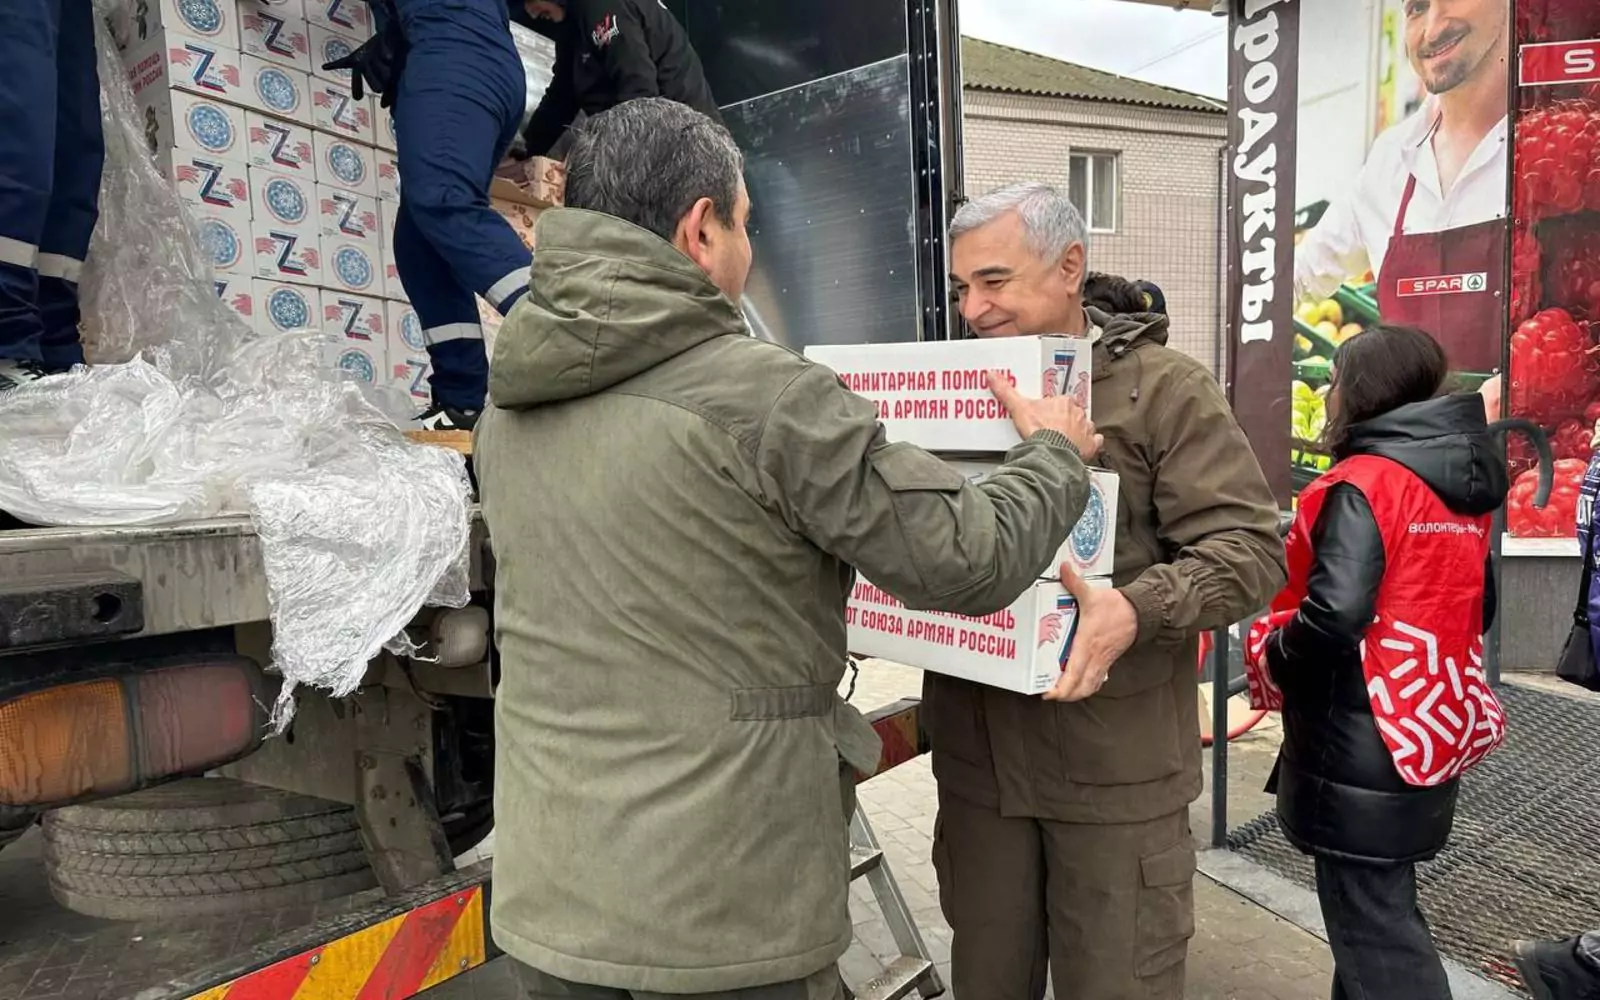 8 000 коробок гуманитарной помощи в Херсонскую область привезла делегация регионального отделения САР